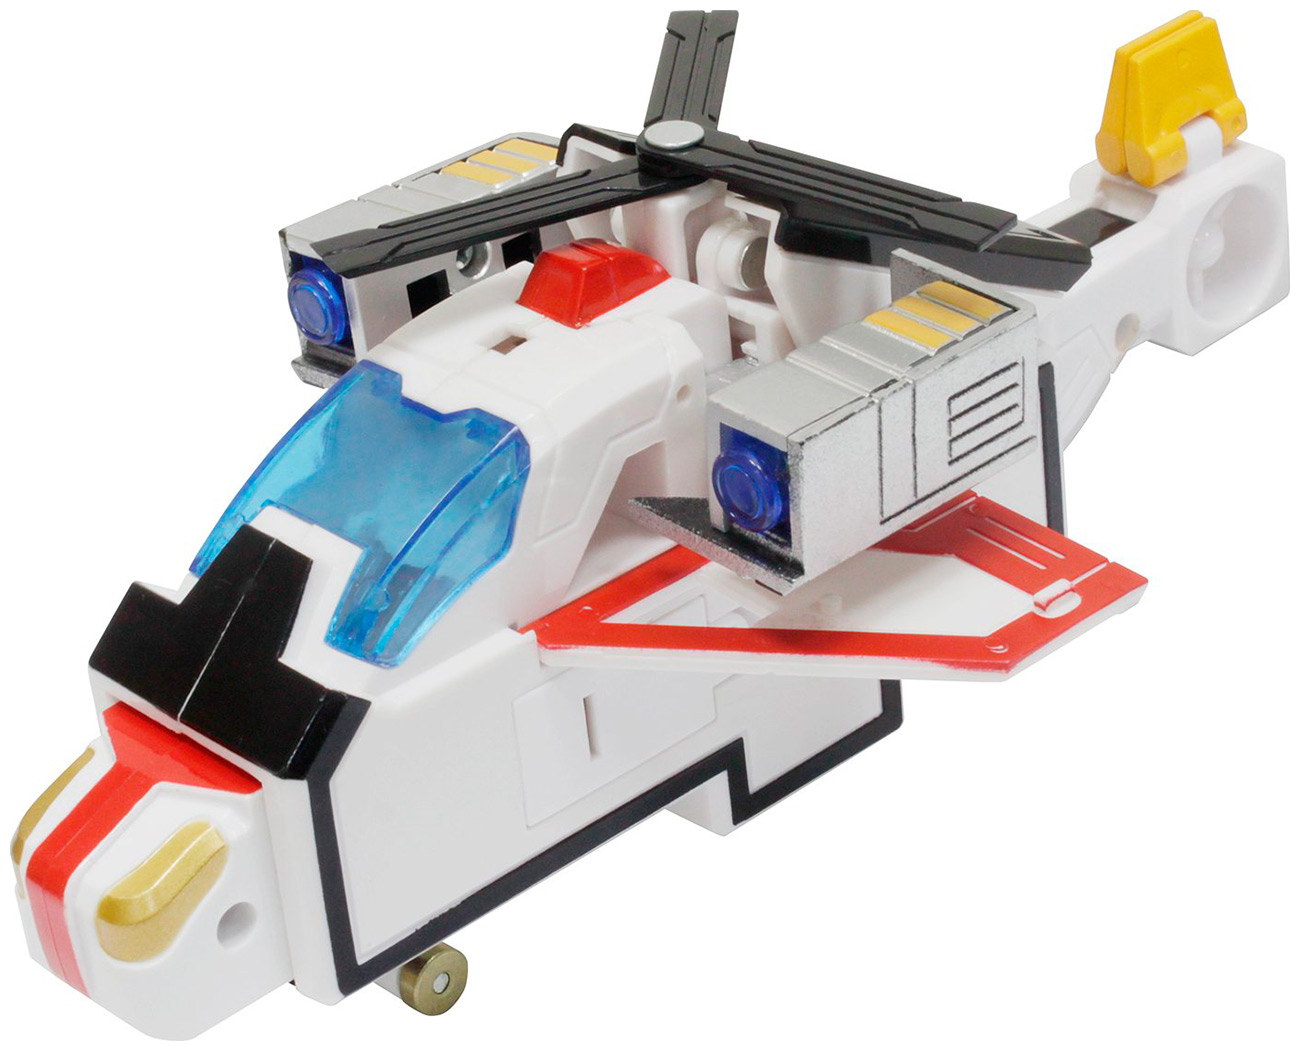 Трансботы 1 Toy XL ''Боевой расчет ВКС: Квадрон'' игрушка трансформер трансботы боевой расчет вкс парапланер серии xl 1 шт